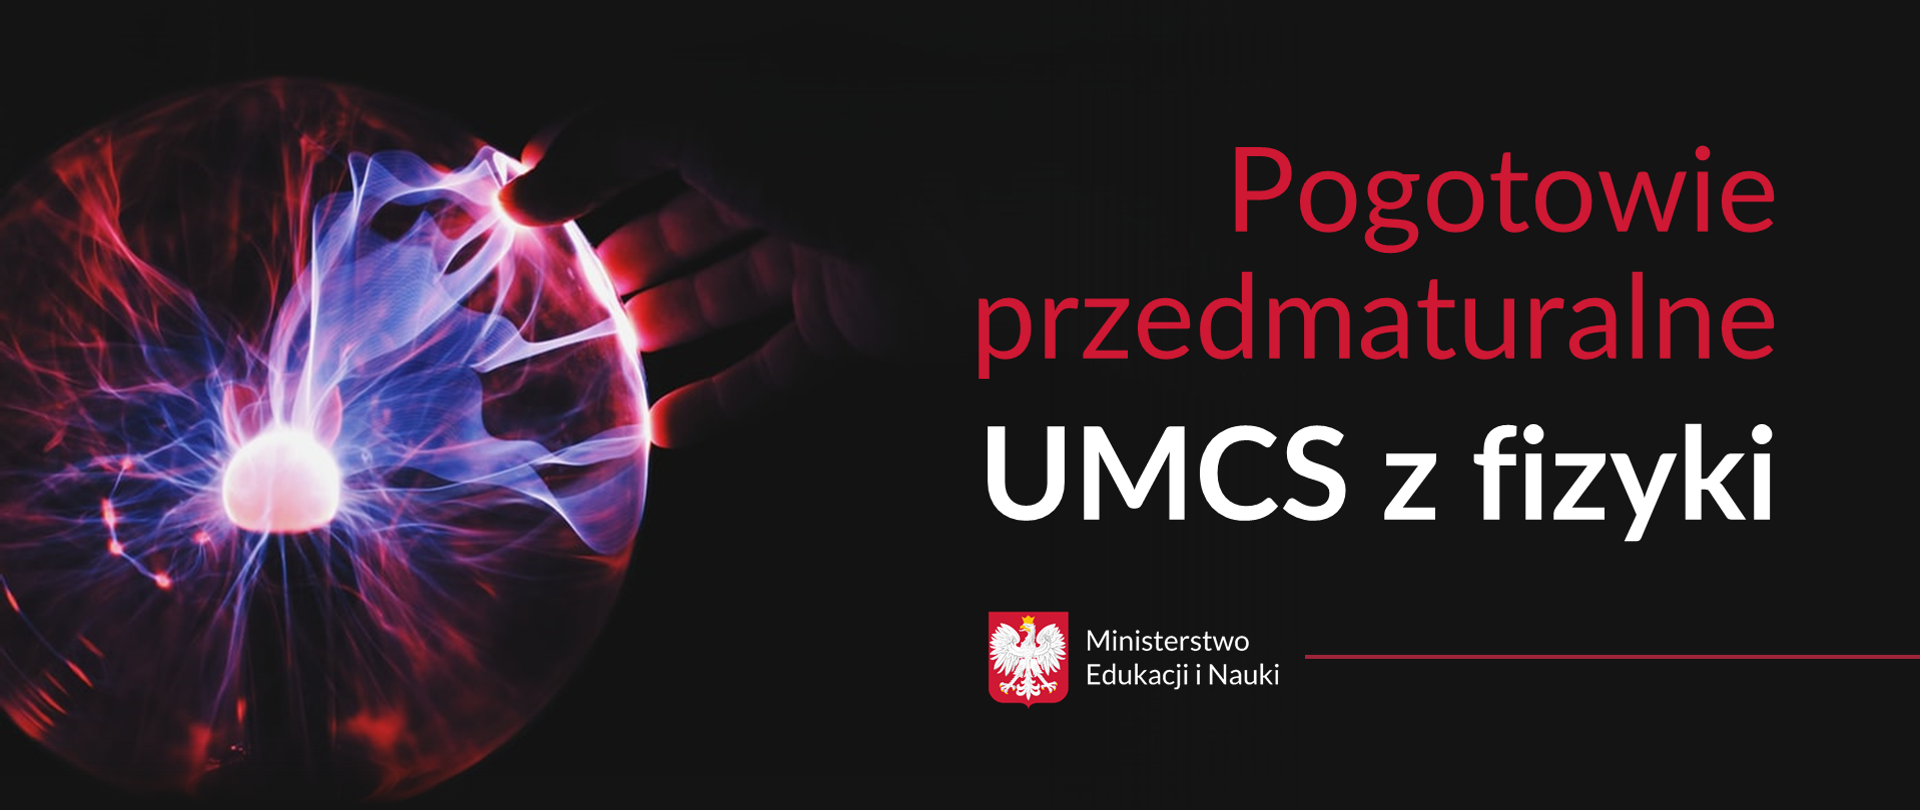 Kula plazmowa w ciemności i tekst: "Pogotowie przedmaturalne UMCS z fizyki"